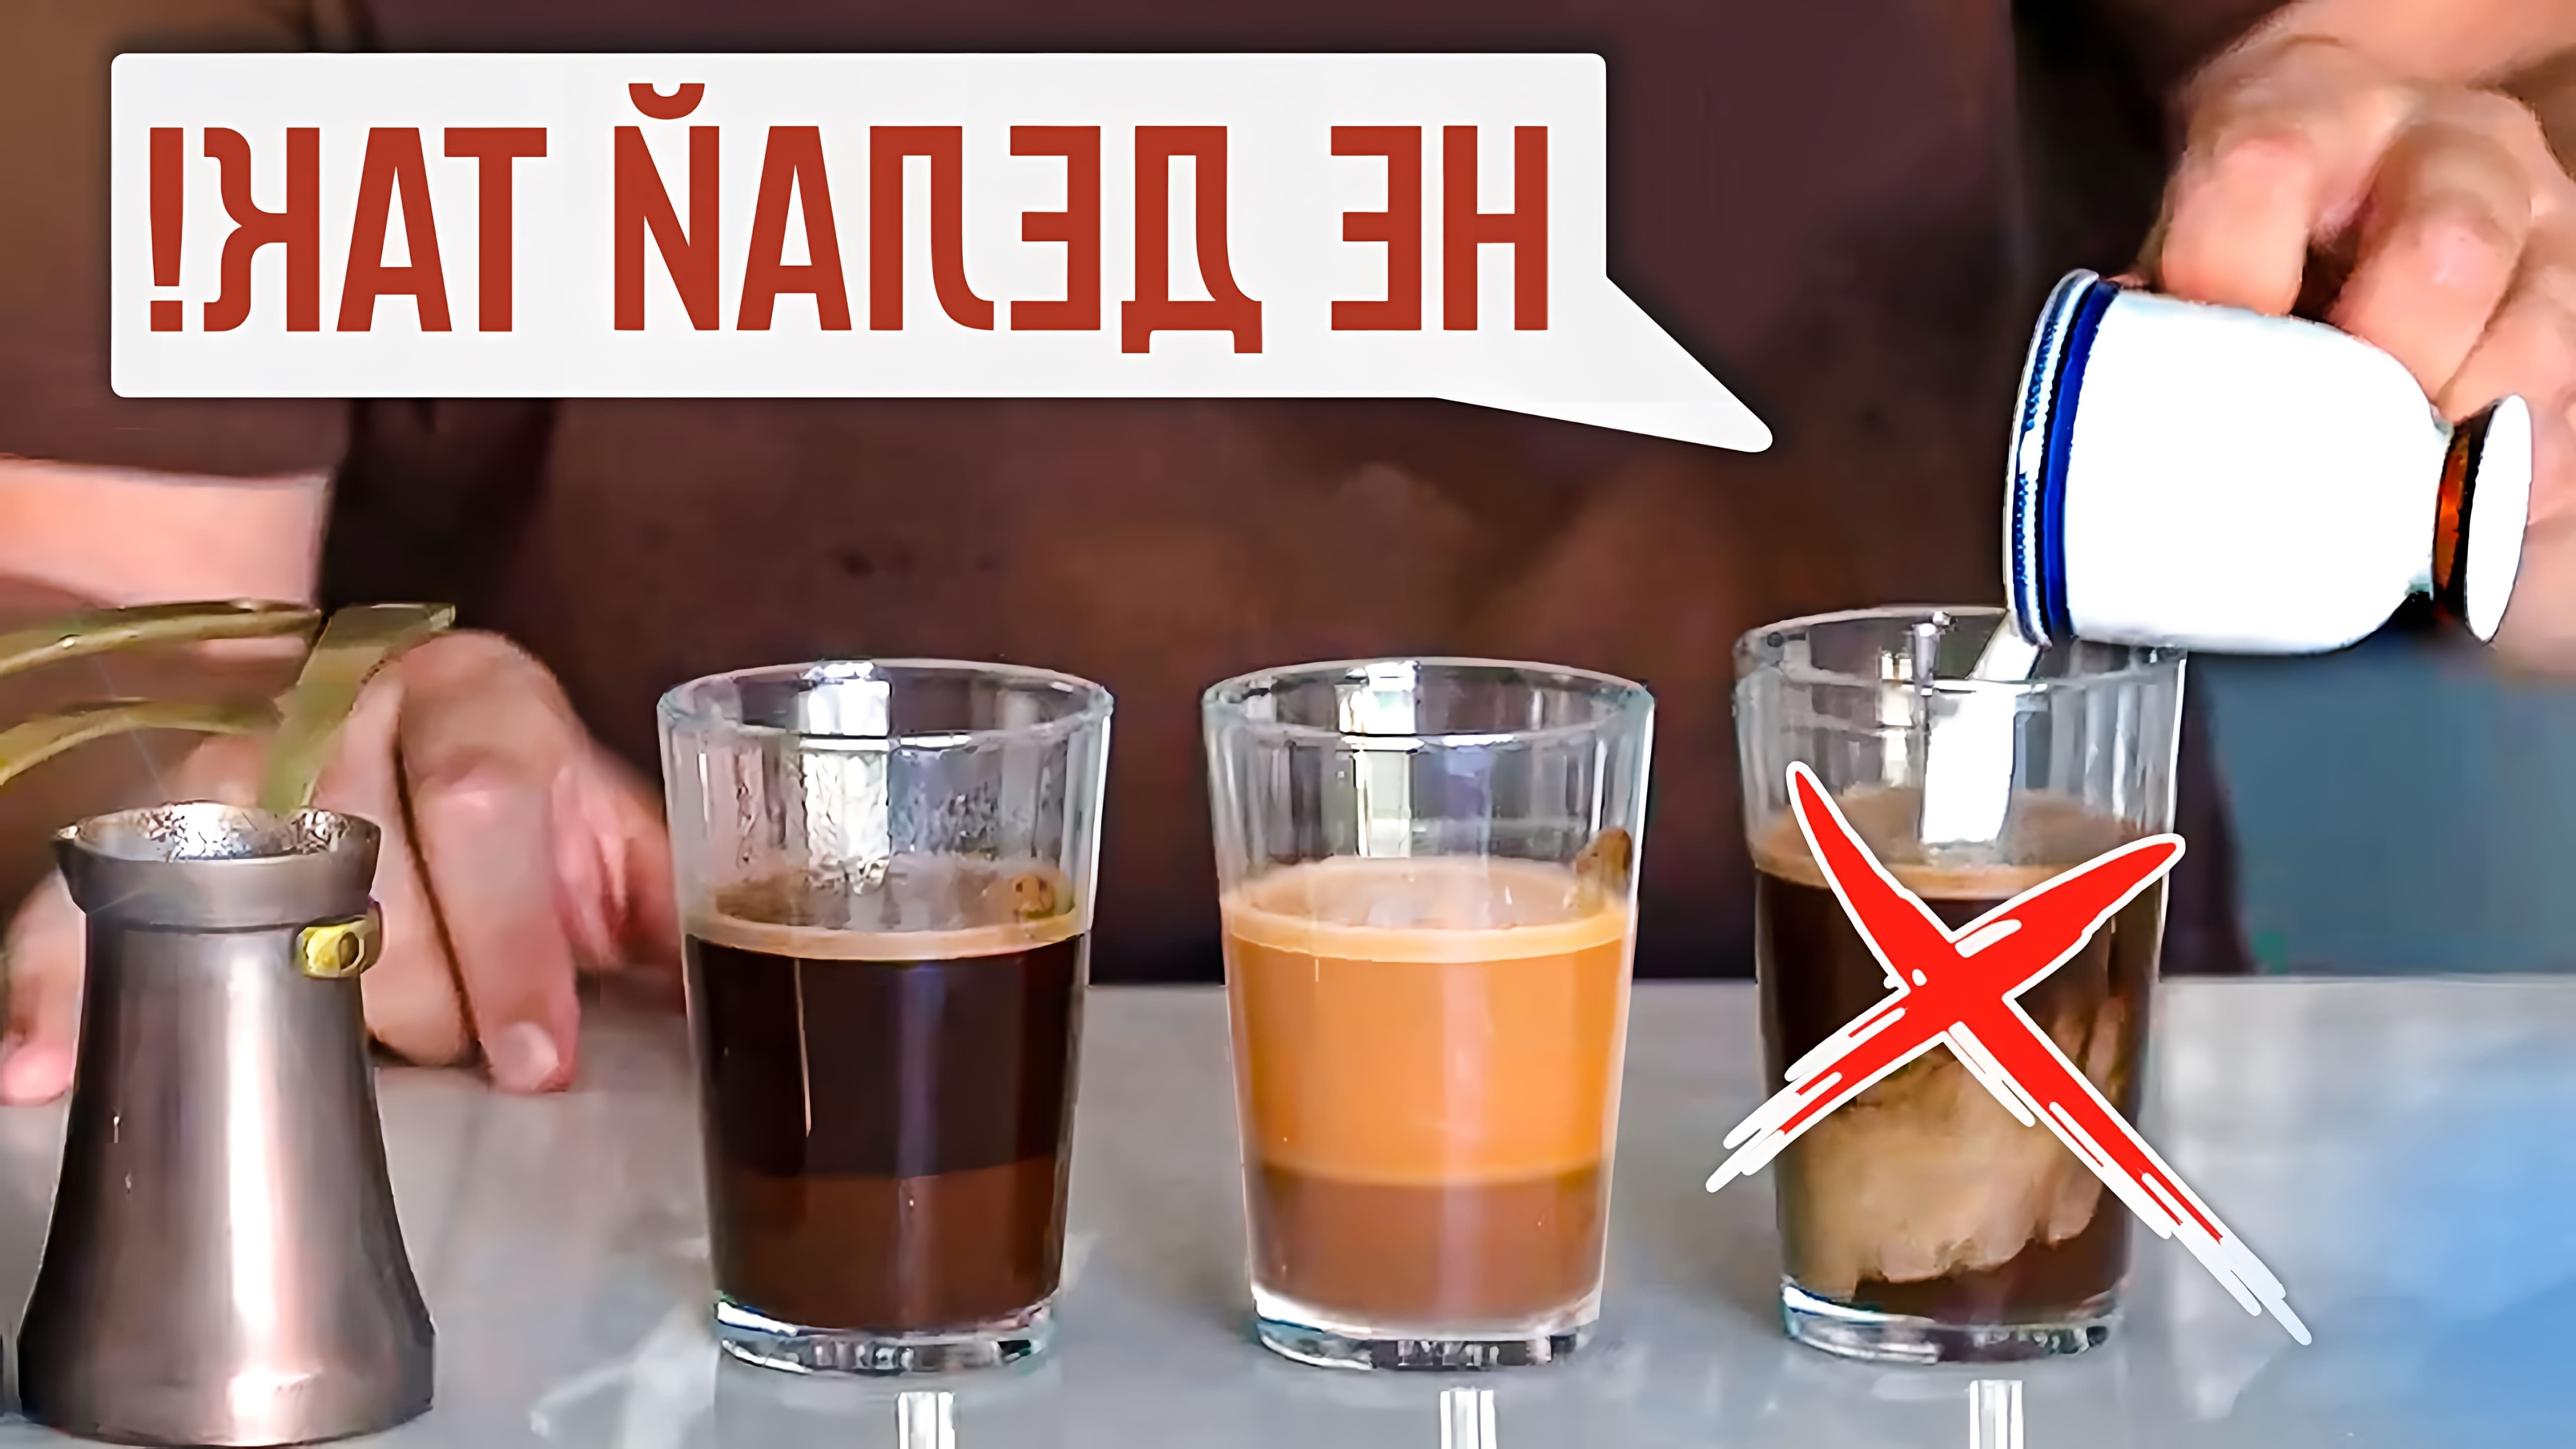 В данном видео автор проводит эксперимент, чтобы определить, в какой момент лучше всего добавлять молоко в кофе, приготовленный в турке